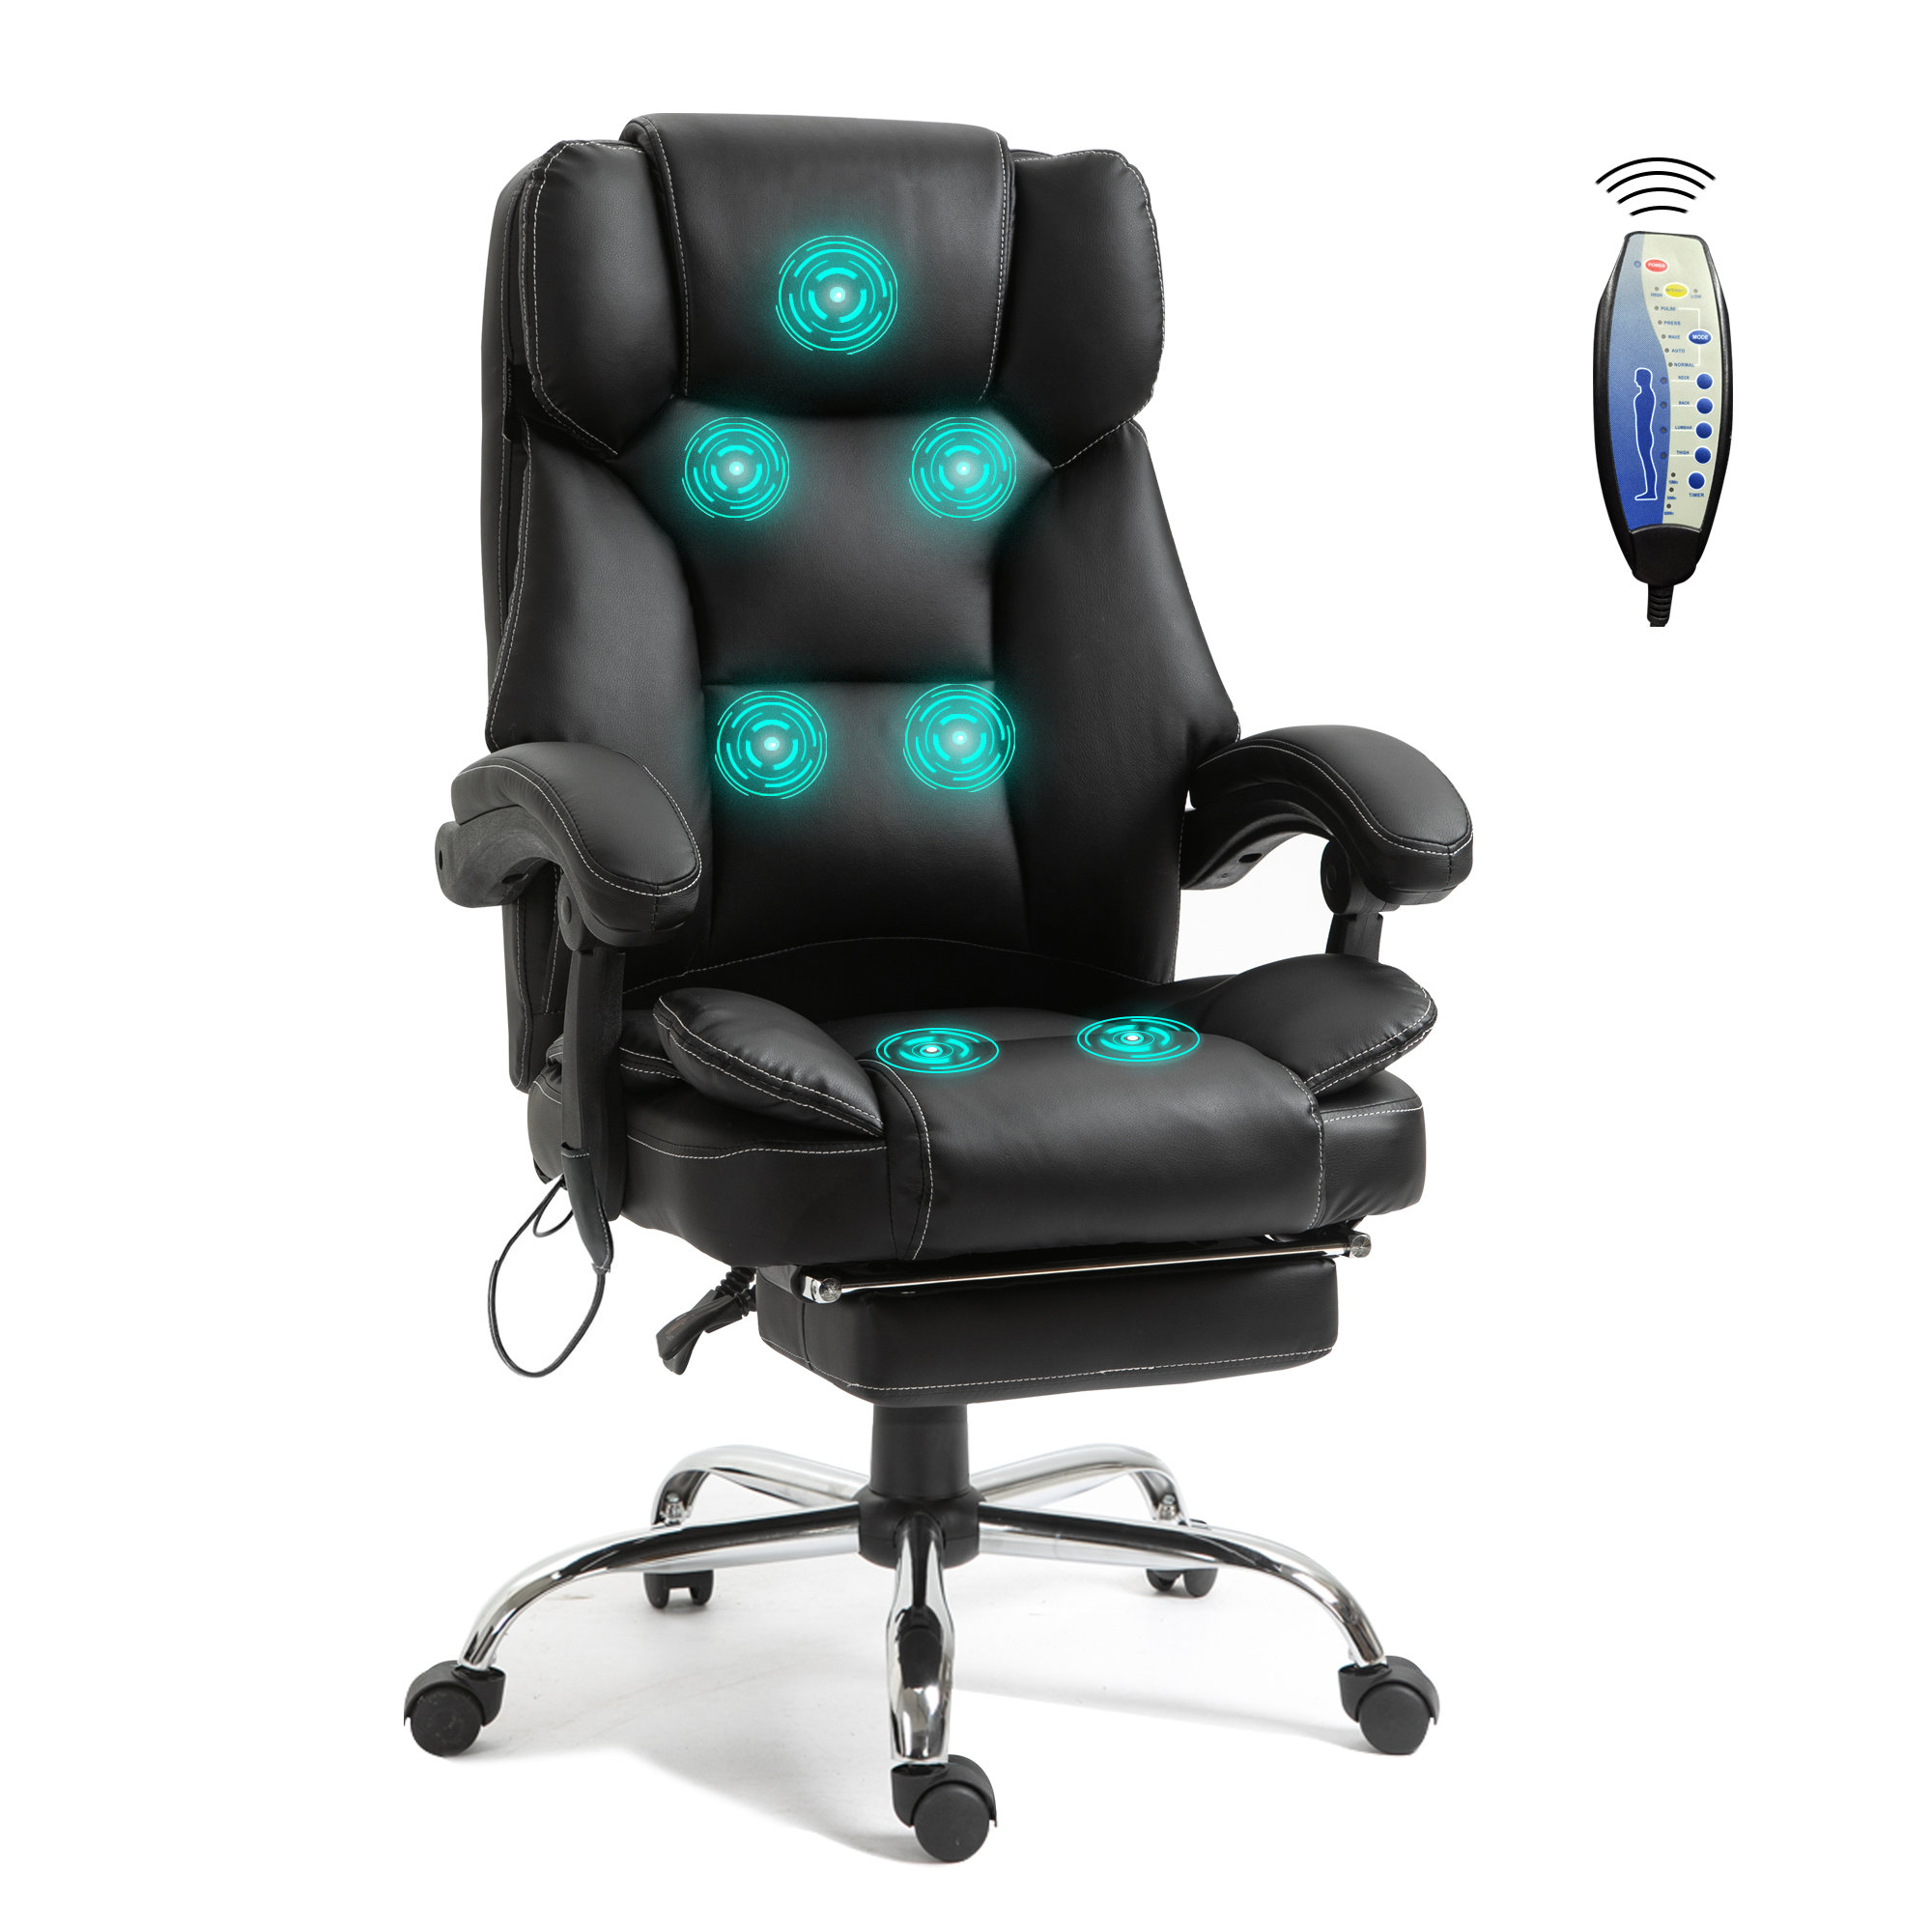 https://assets.wfcdn.com/im/12045725/compr-r85/2266/226683536/ergonomic-executive-chair.jpg